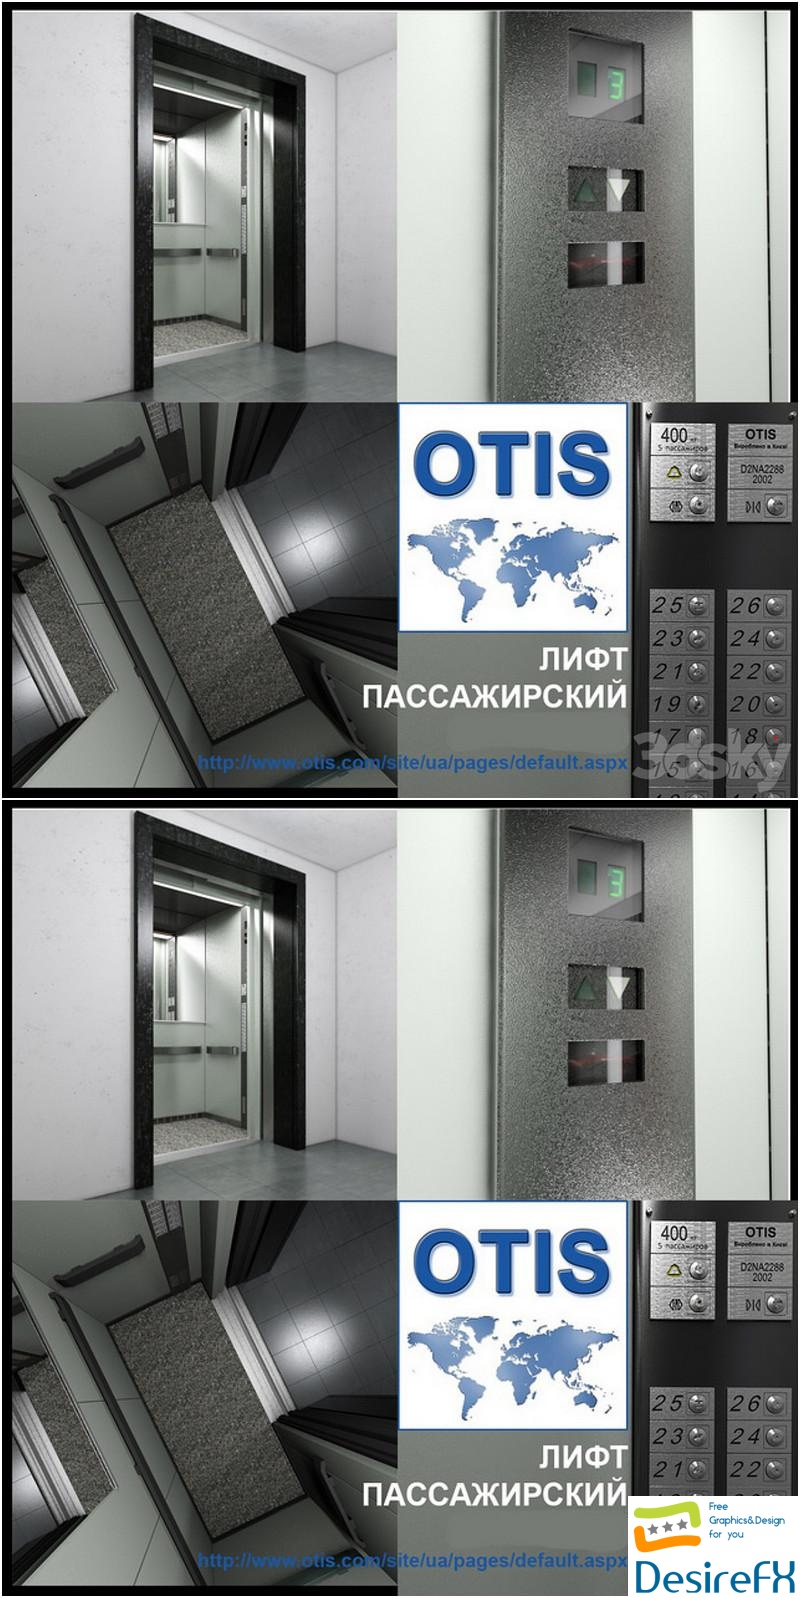 OTIS Elevator passenger 3D Model